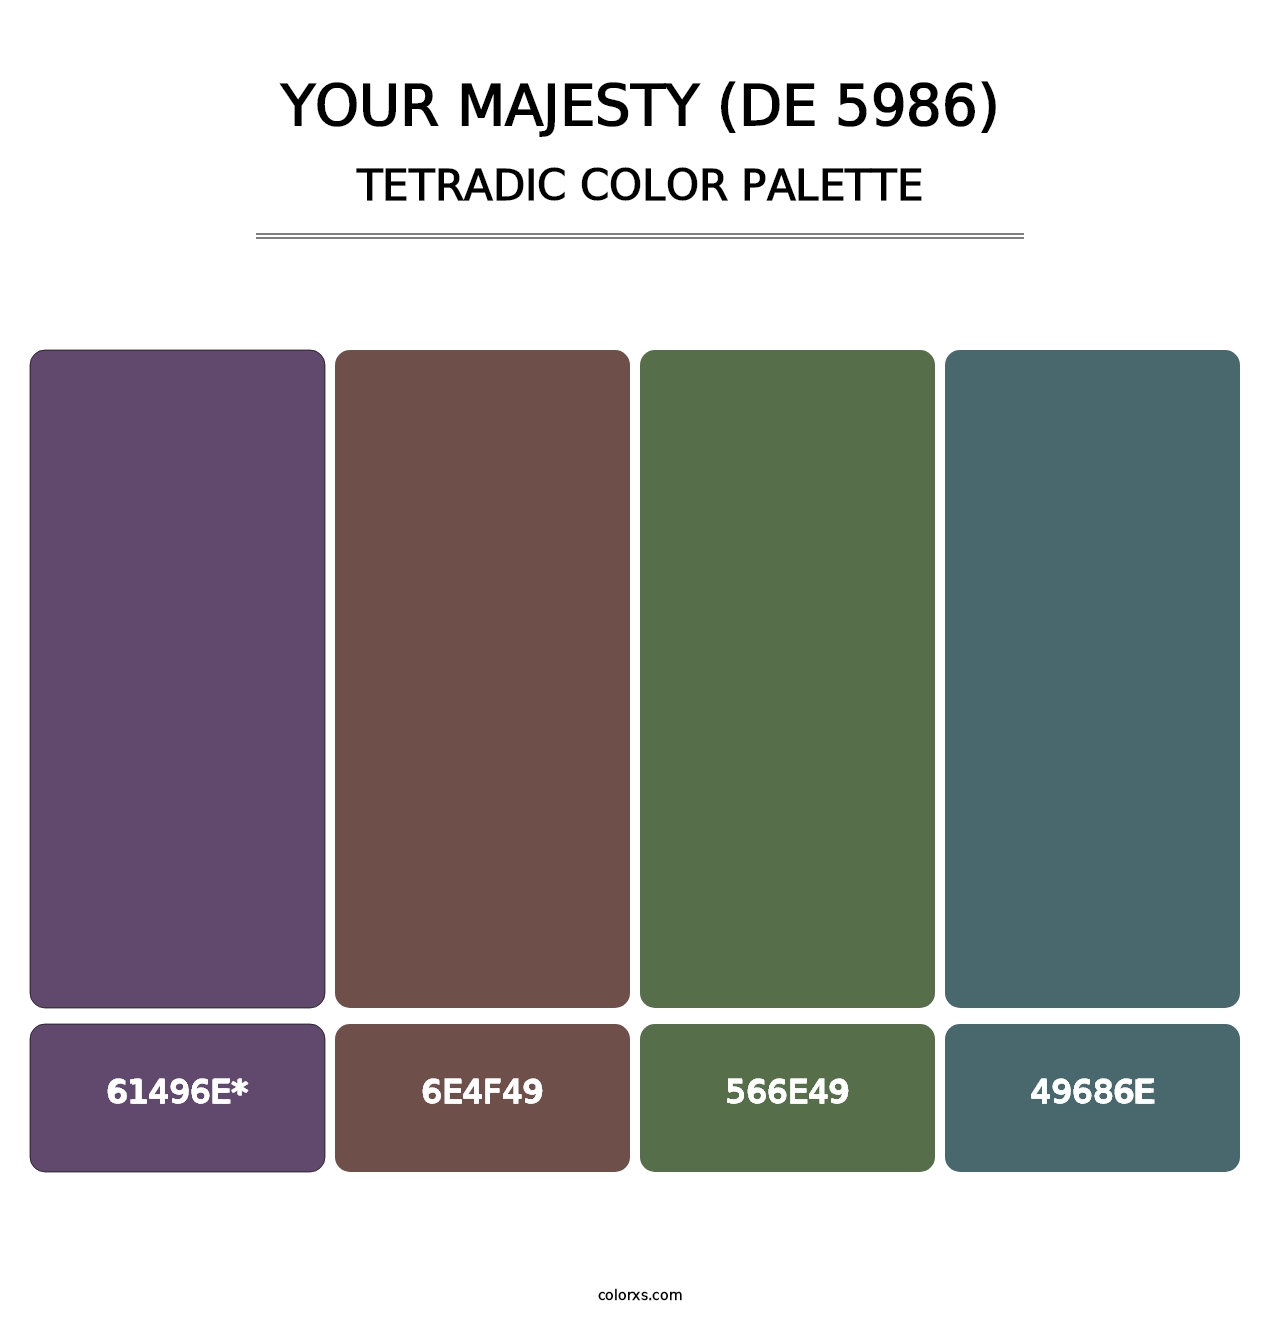 Your Majesty (DE 5986) - Tetradic Color Palette